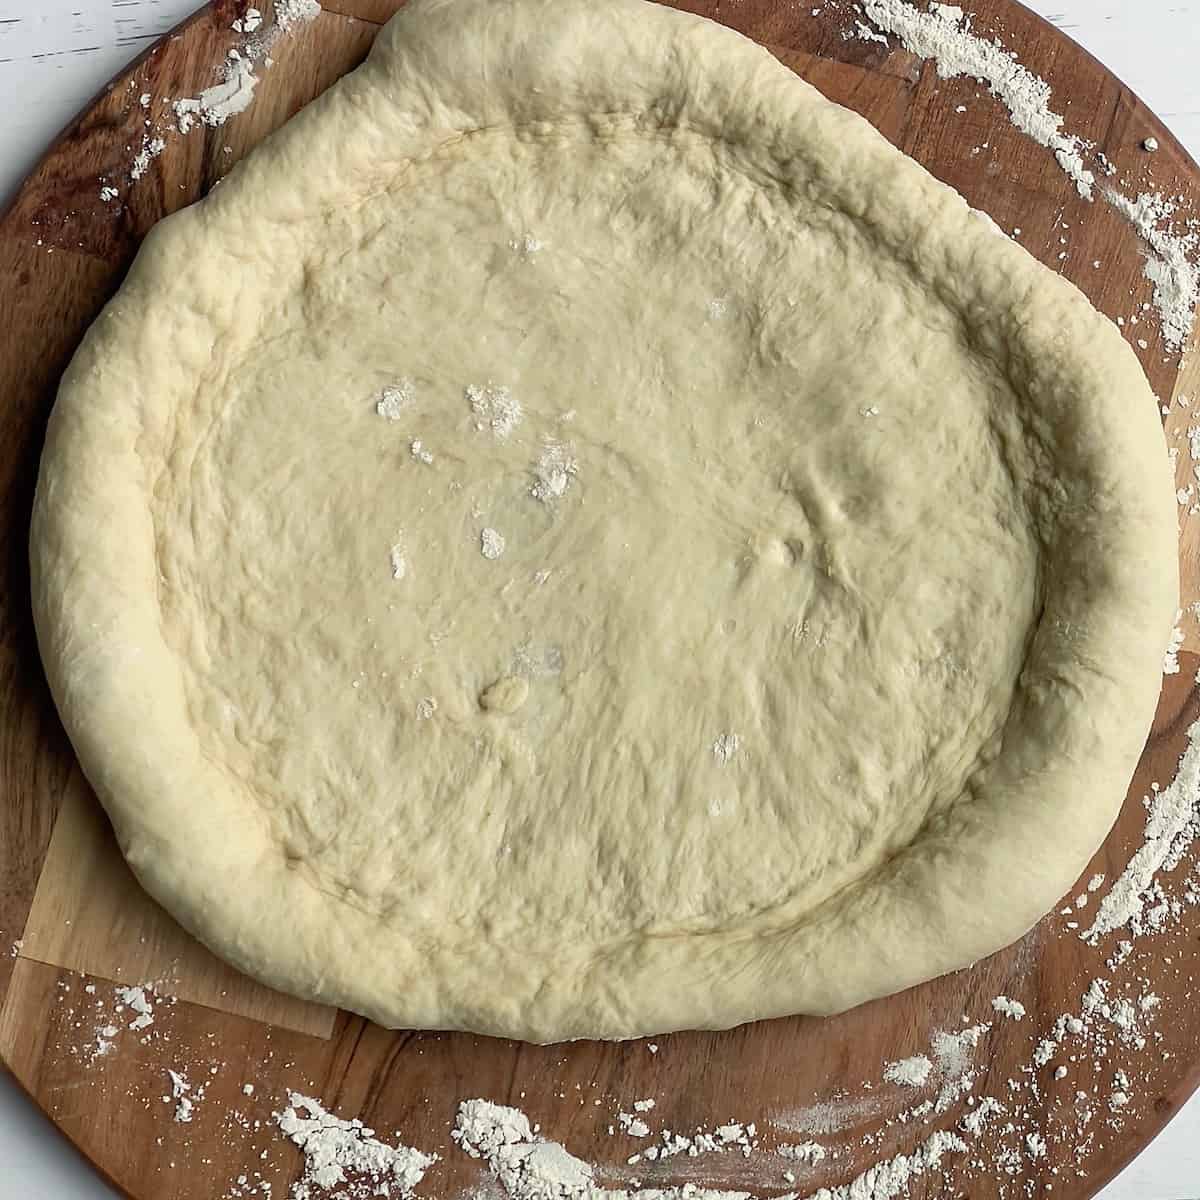 Bread Machine Pizza Dough